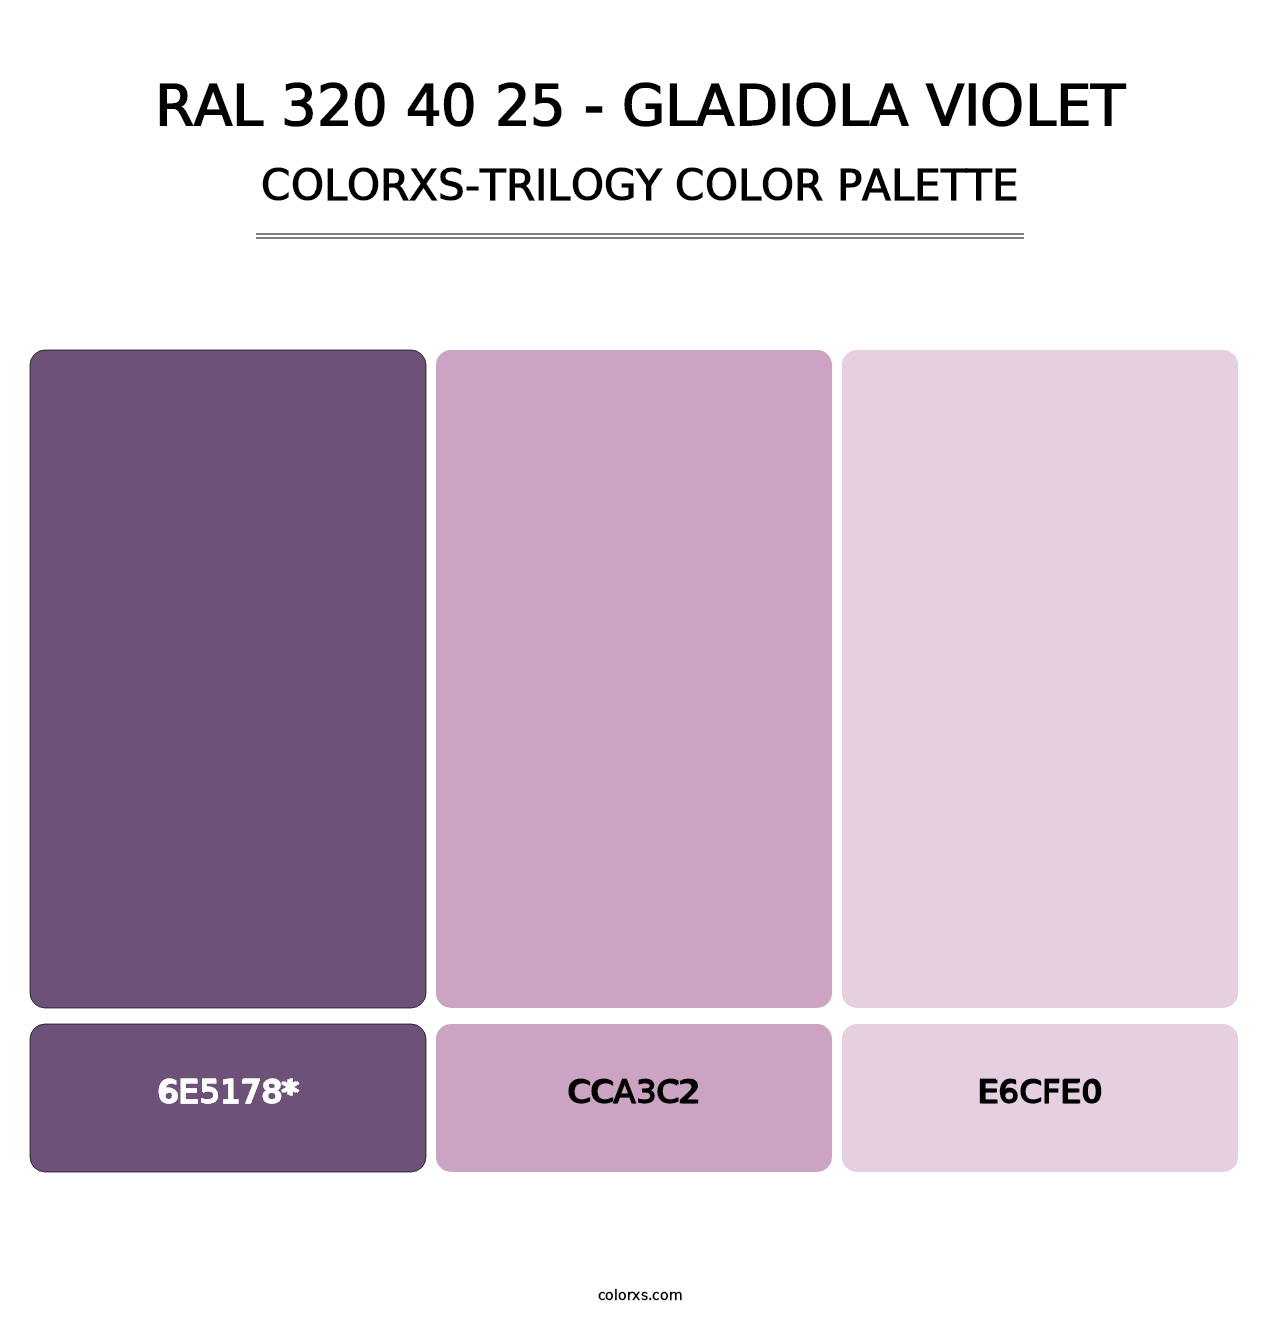 RAL 320 40 25 - Gladiola Violet - Colorxs Trilogy Palette